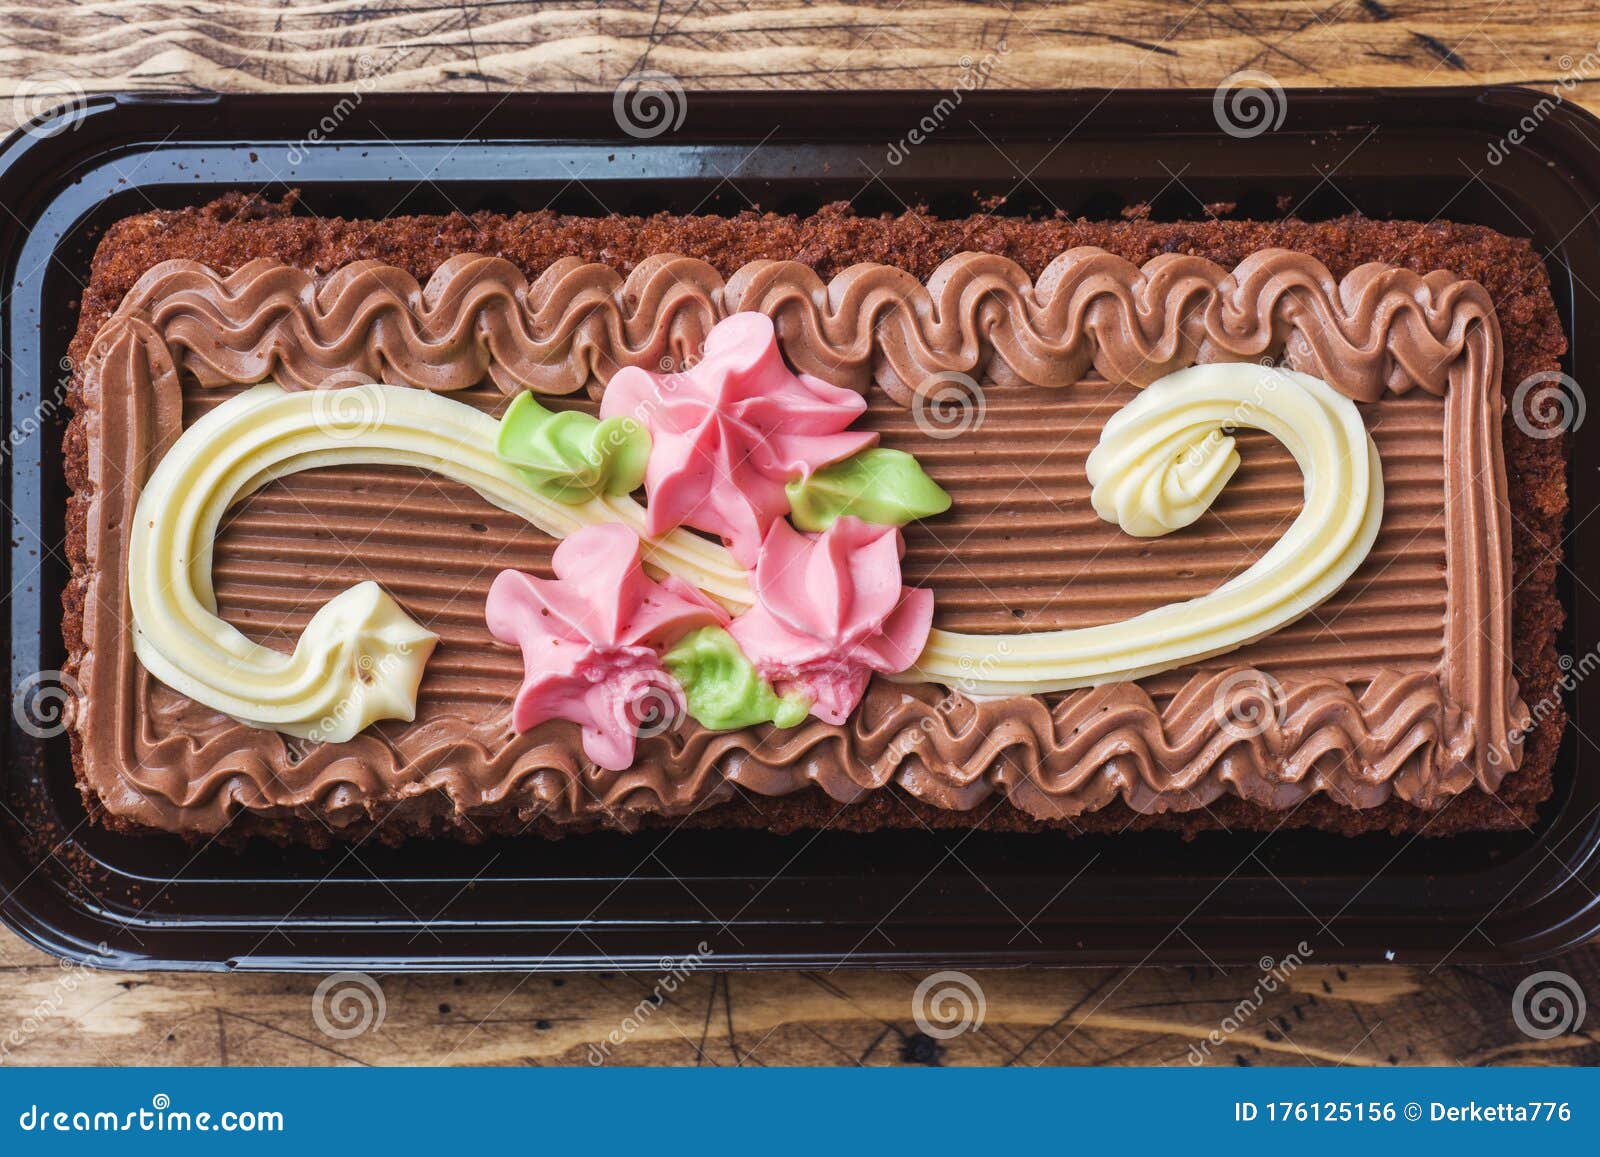 Tarta Rectangular Chocolate Decorada Con Rosas La Comida Dulce Es Un Negocio De Repostería. Vista Superior Foto de archivo - Imagen de decoraciones, hermoso: 176125156